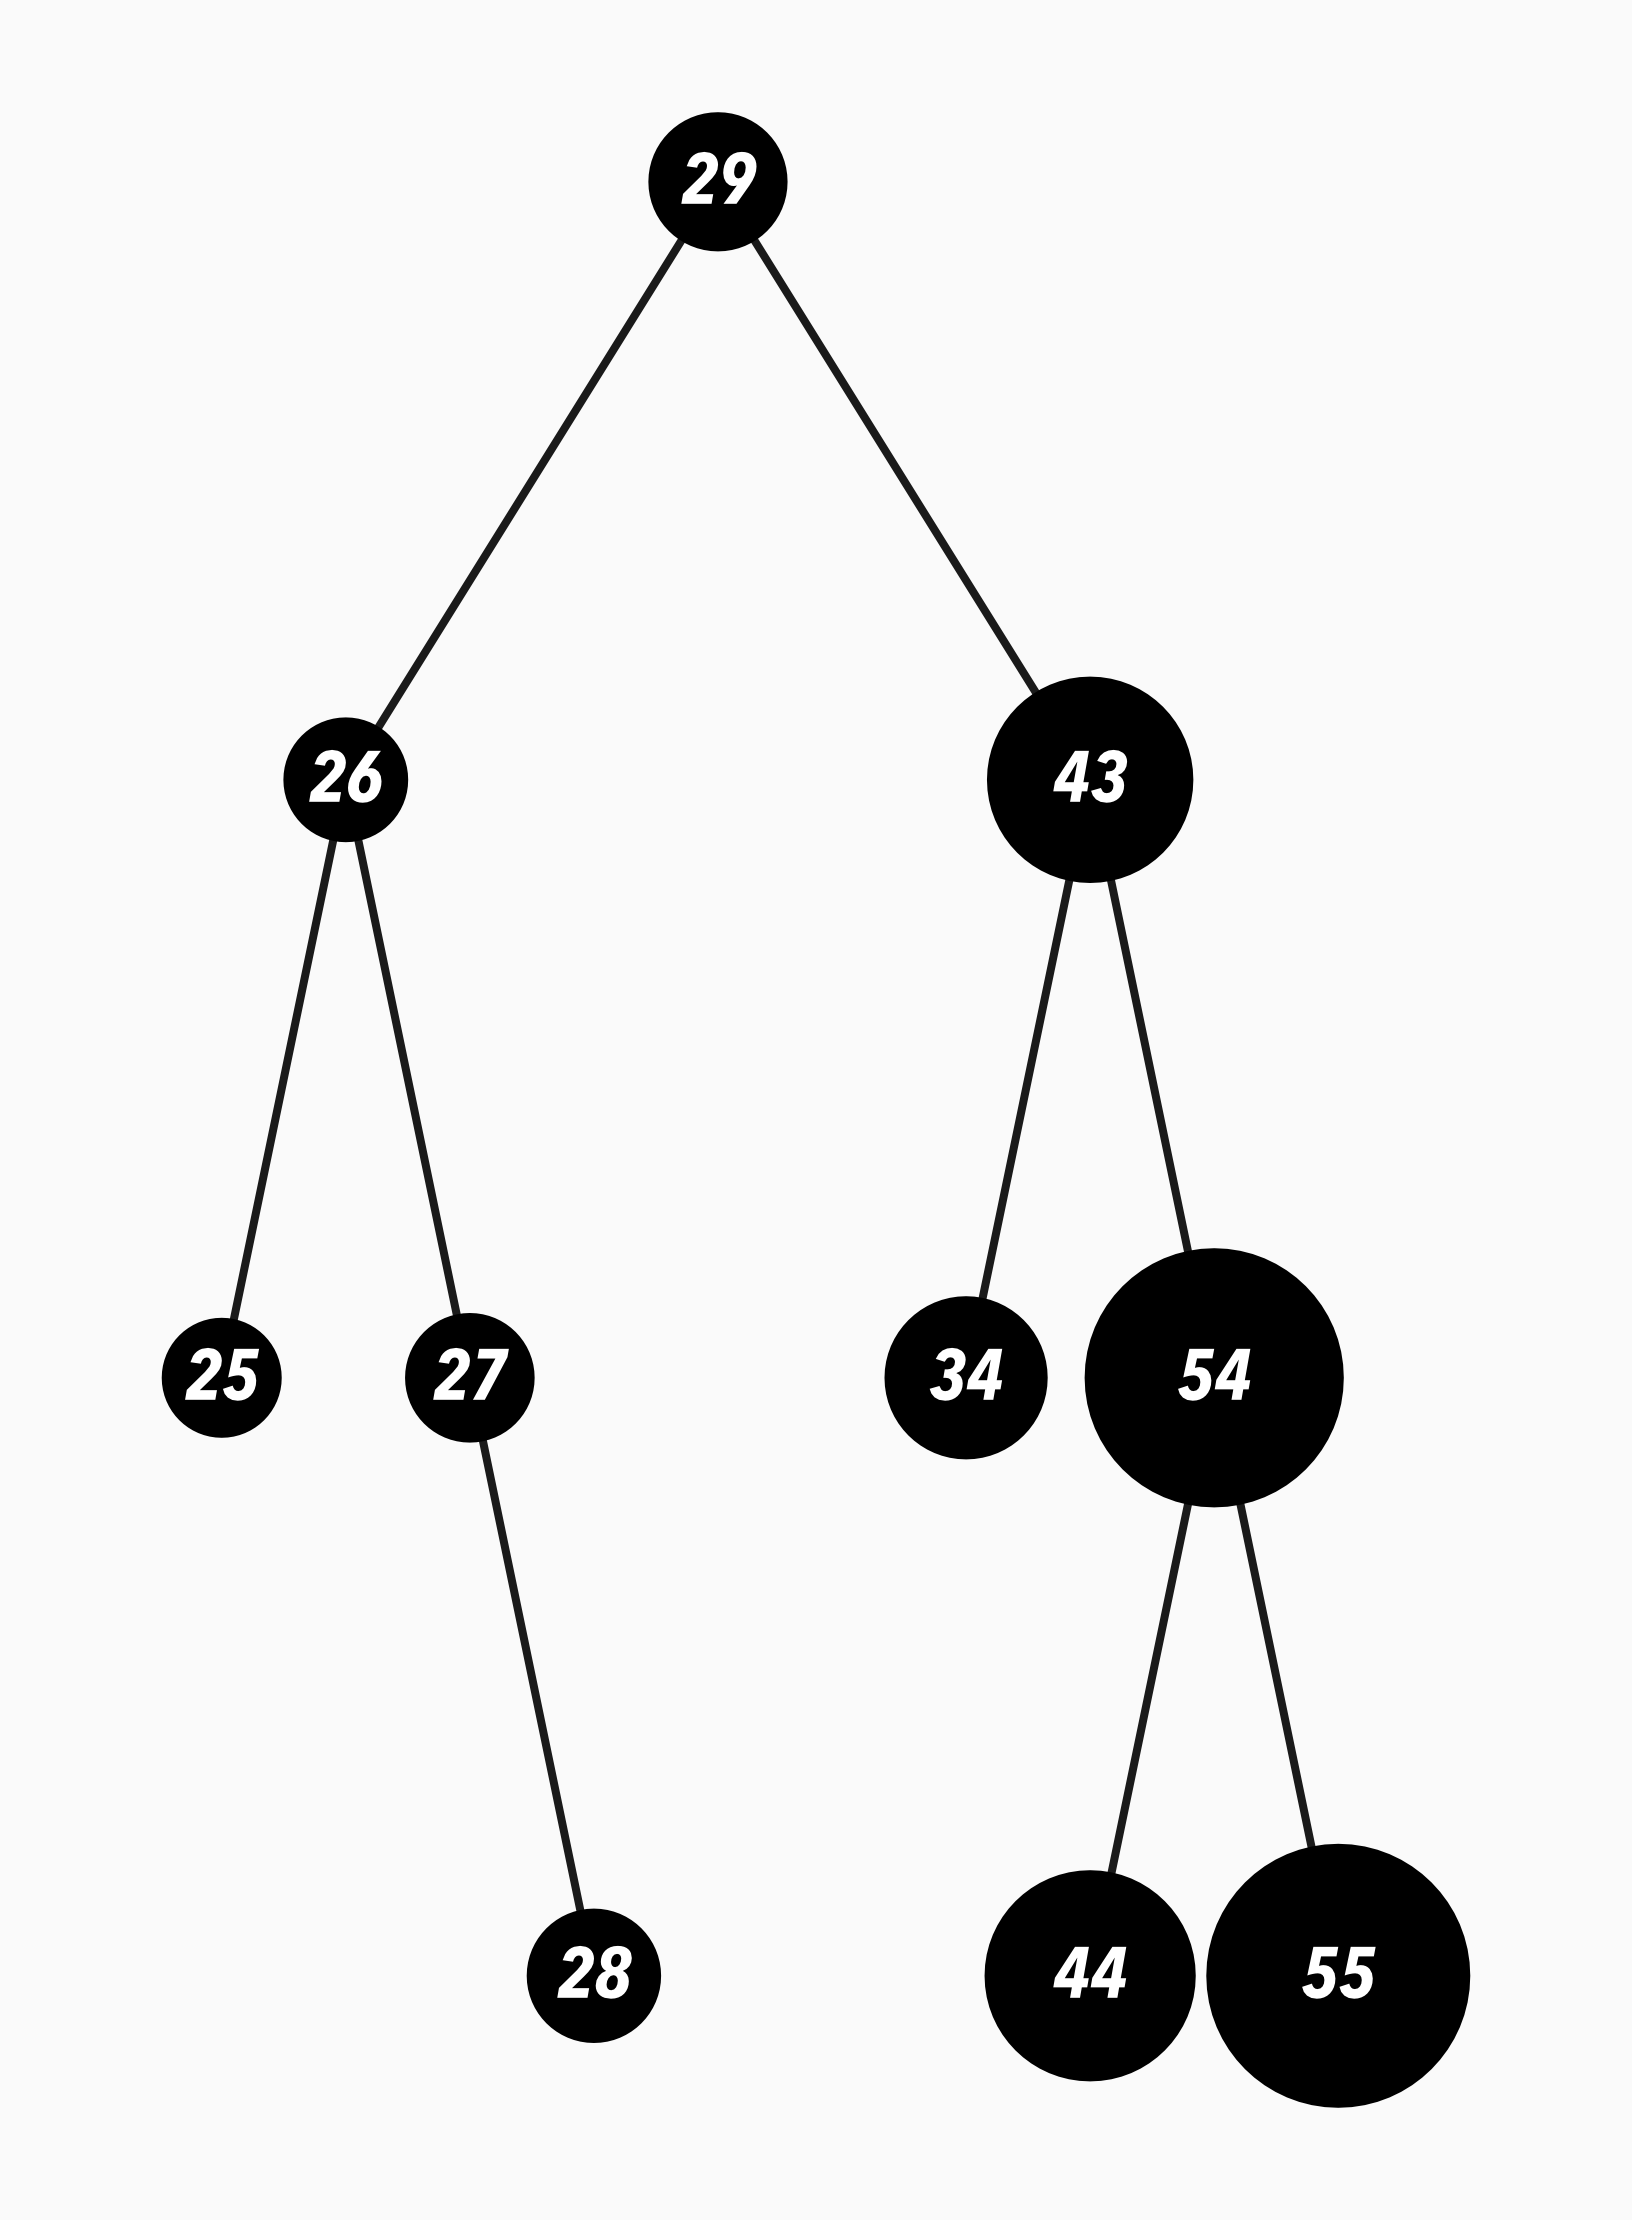 Example of a binary tree